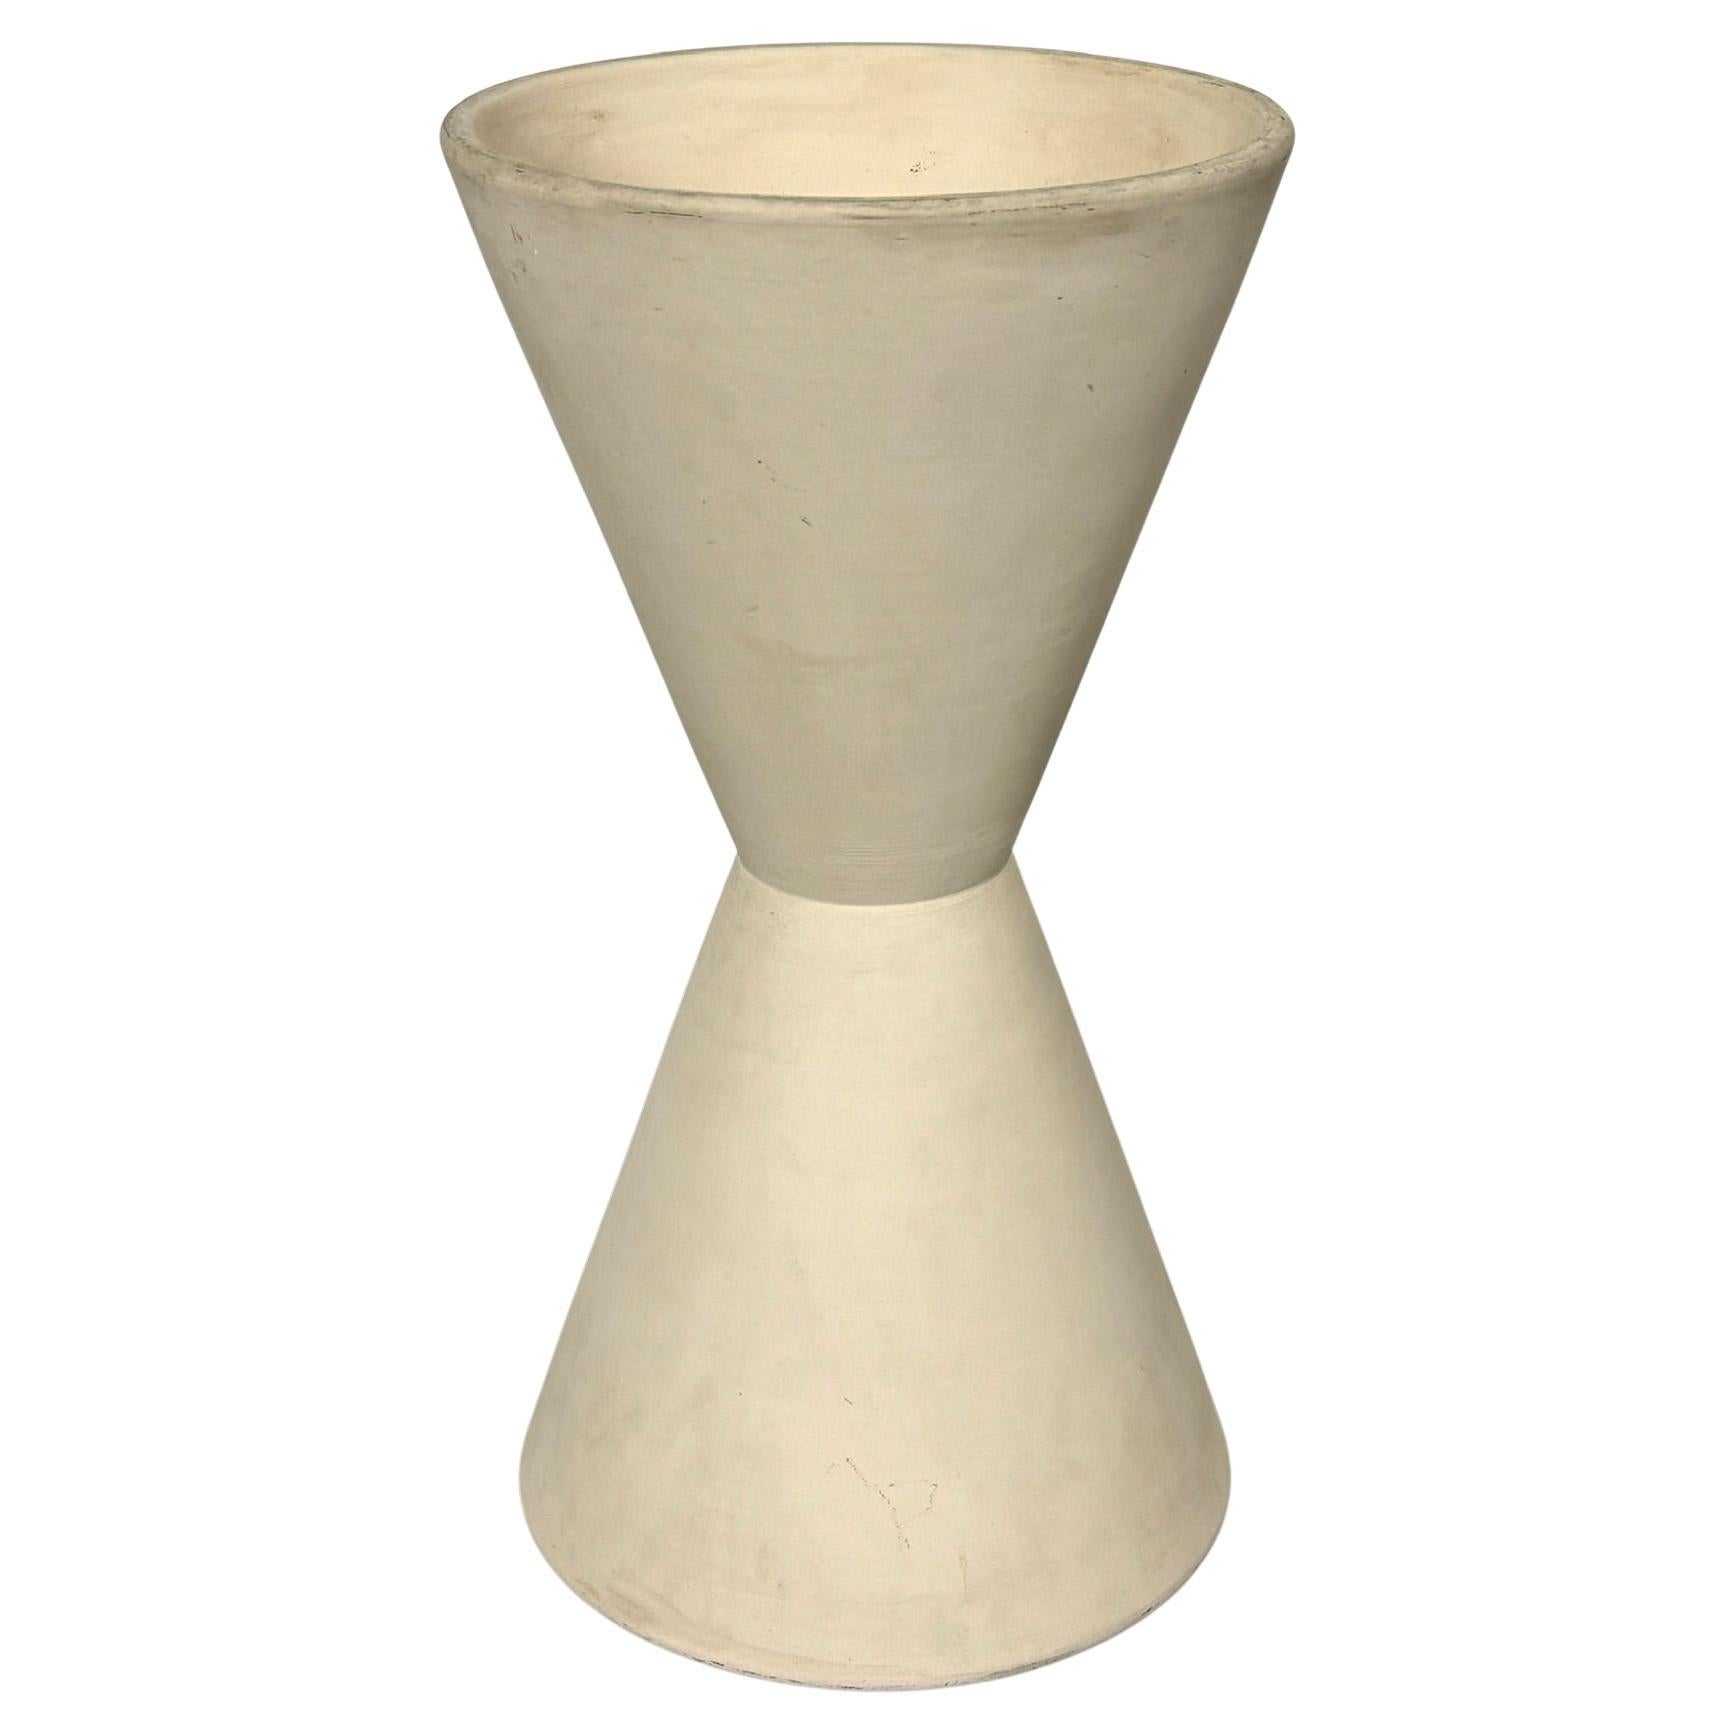 Lagardo Tackett Double Cone Architectural Pottery Bisque Ceramic 1950s